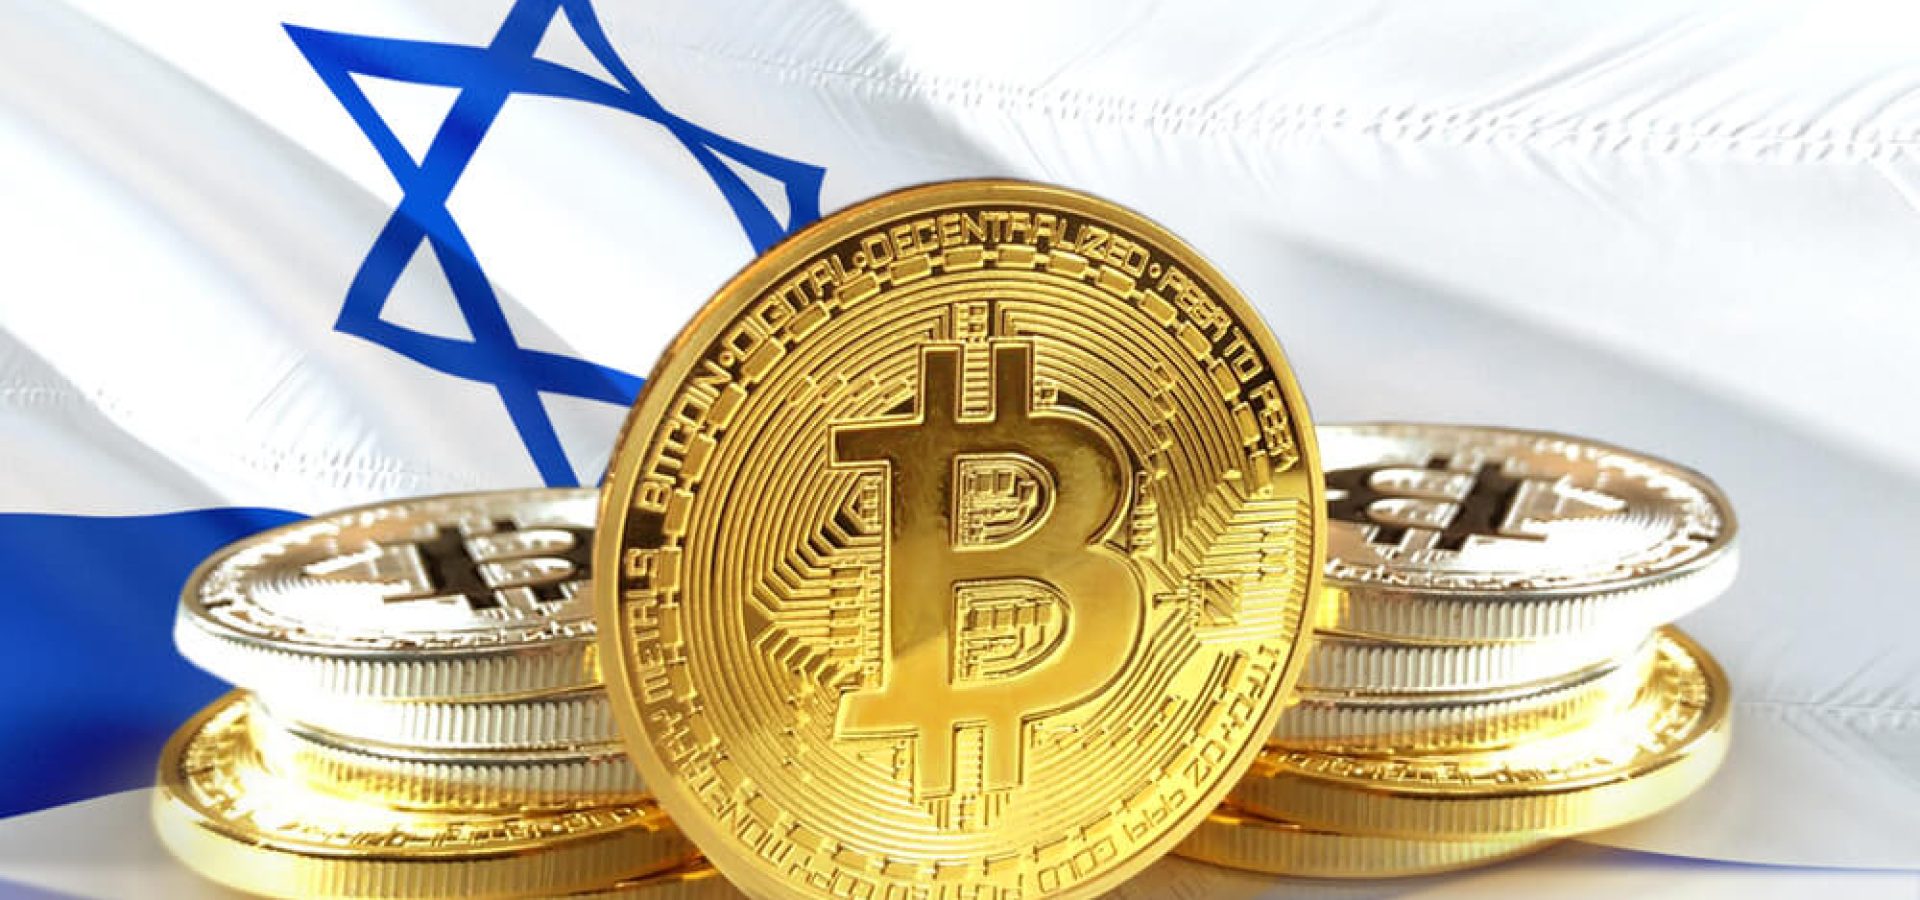 Digital Coins: Bitcoin coins on Israel's flag.